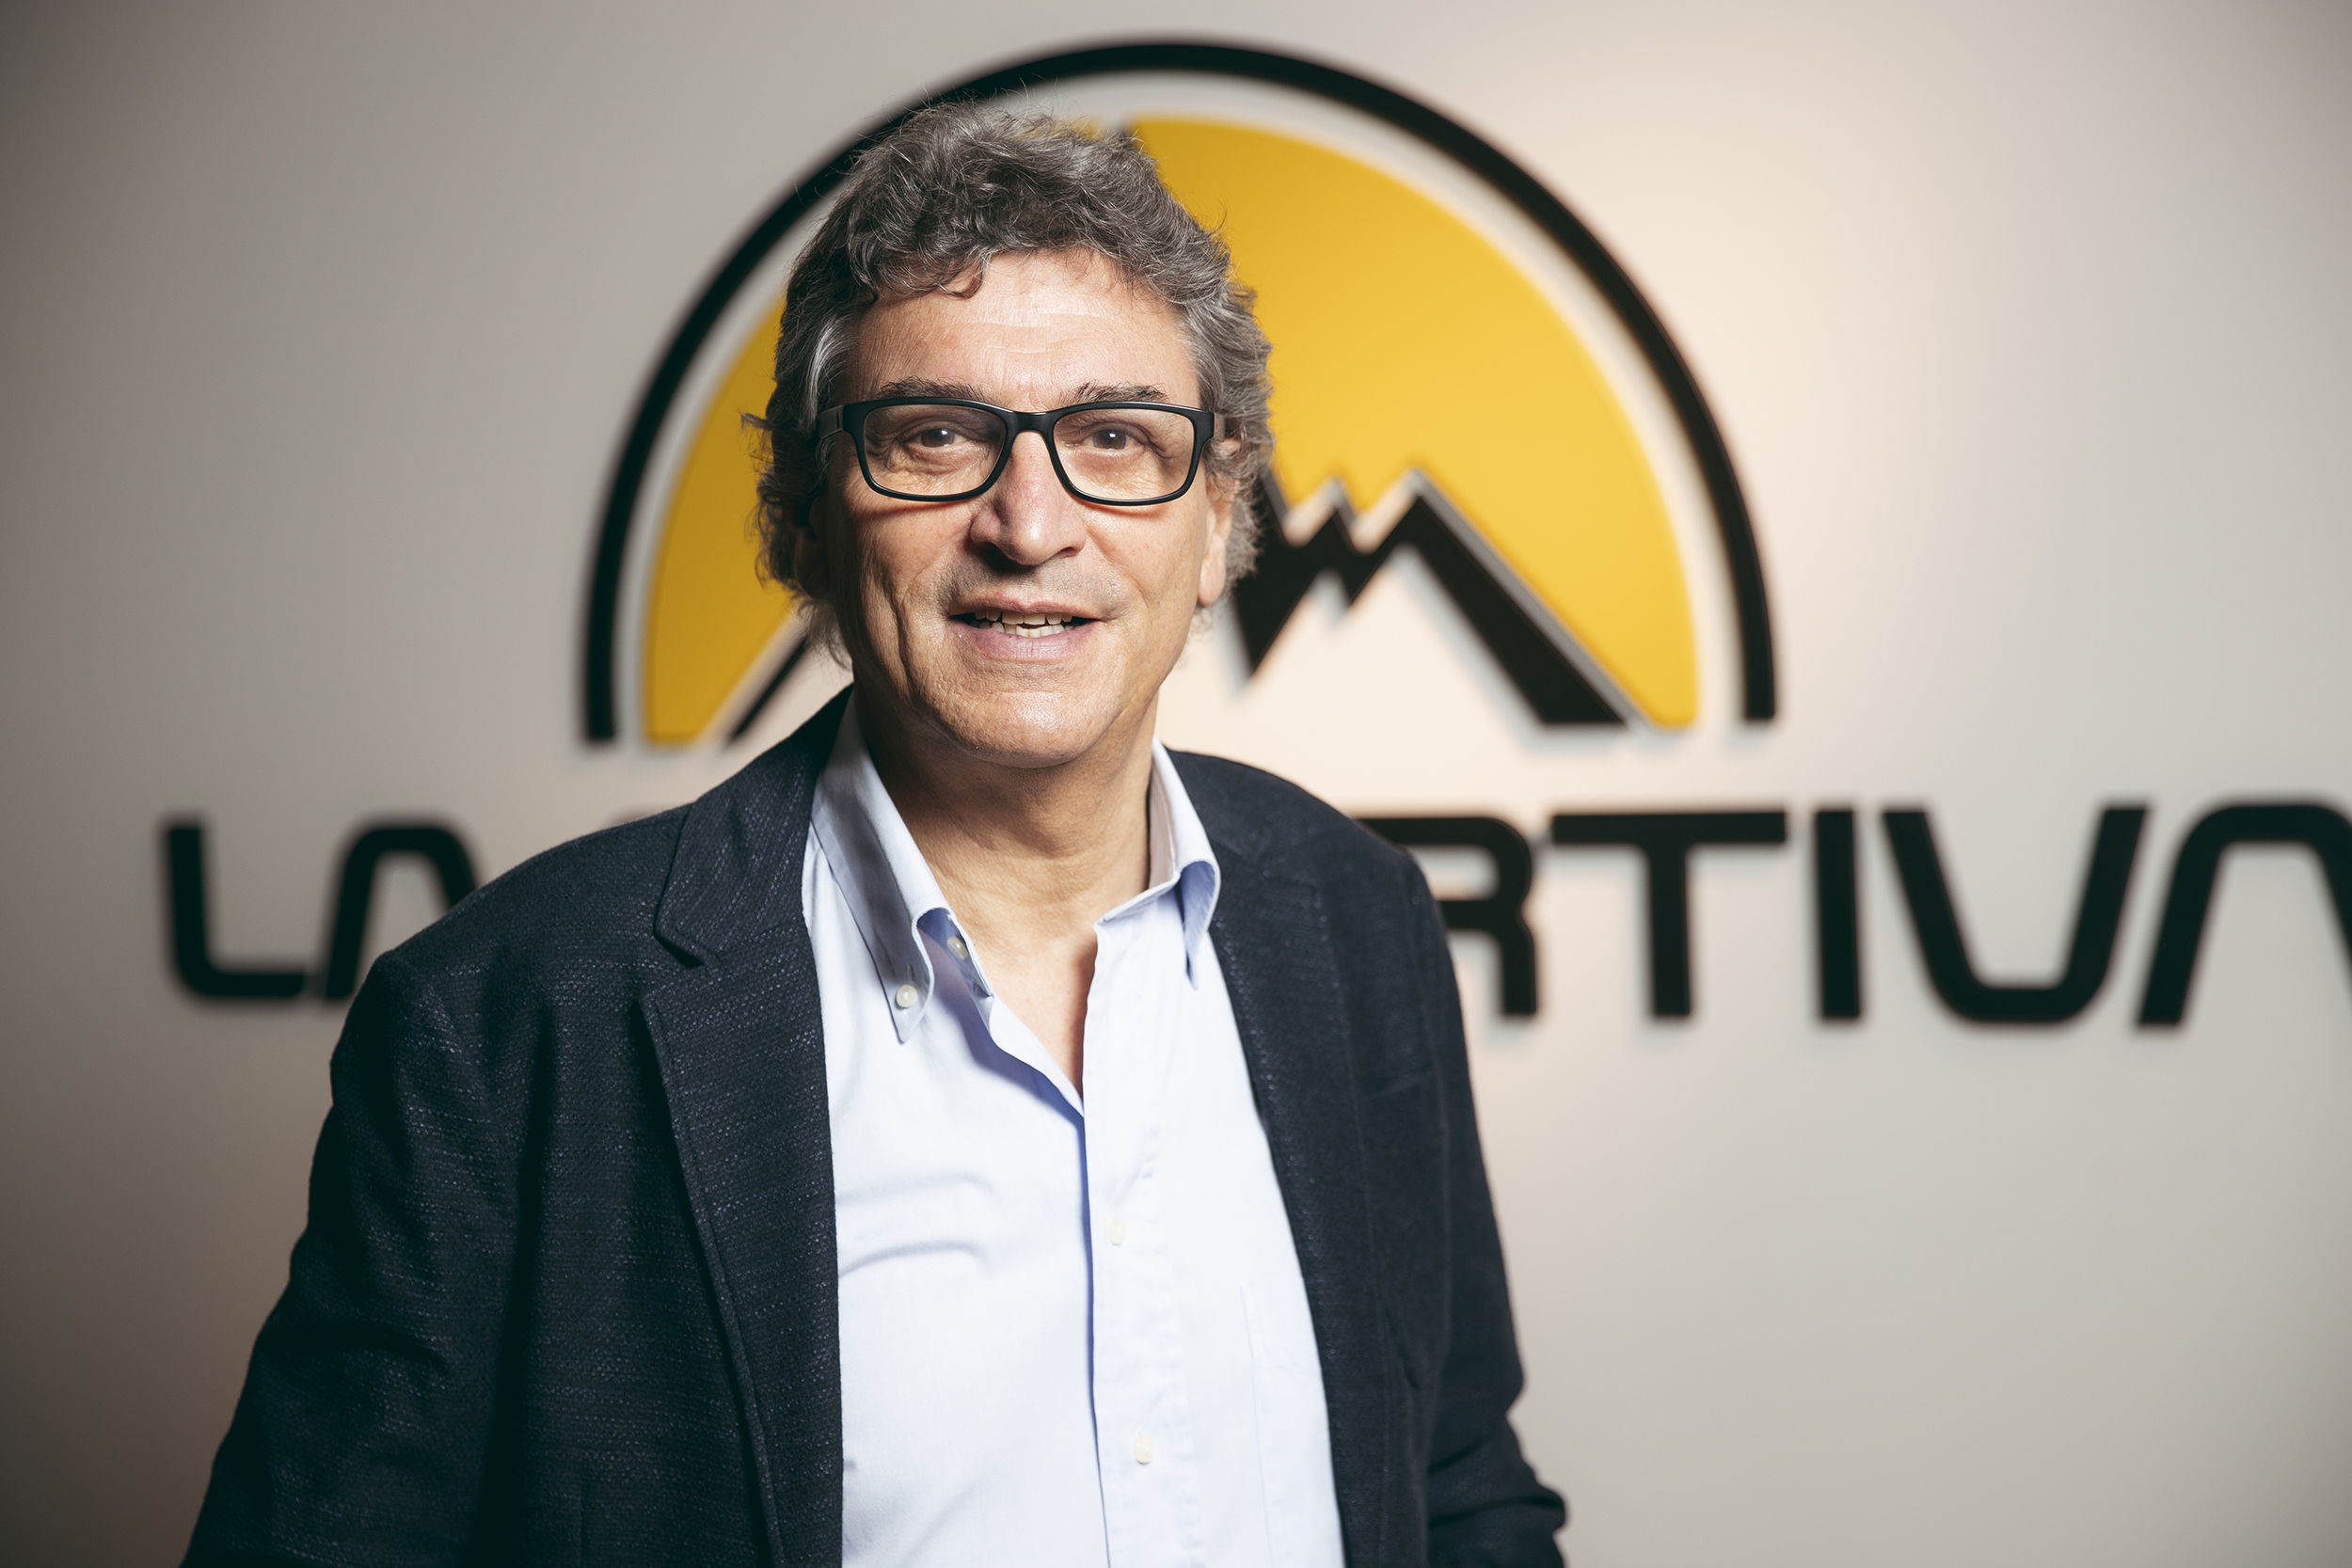 La Sportiva CEO - Lorenzo Delladio